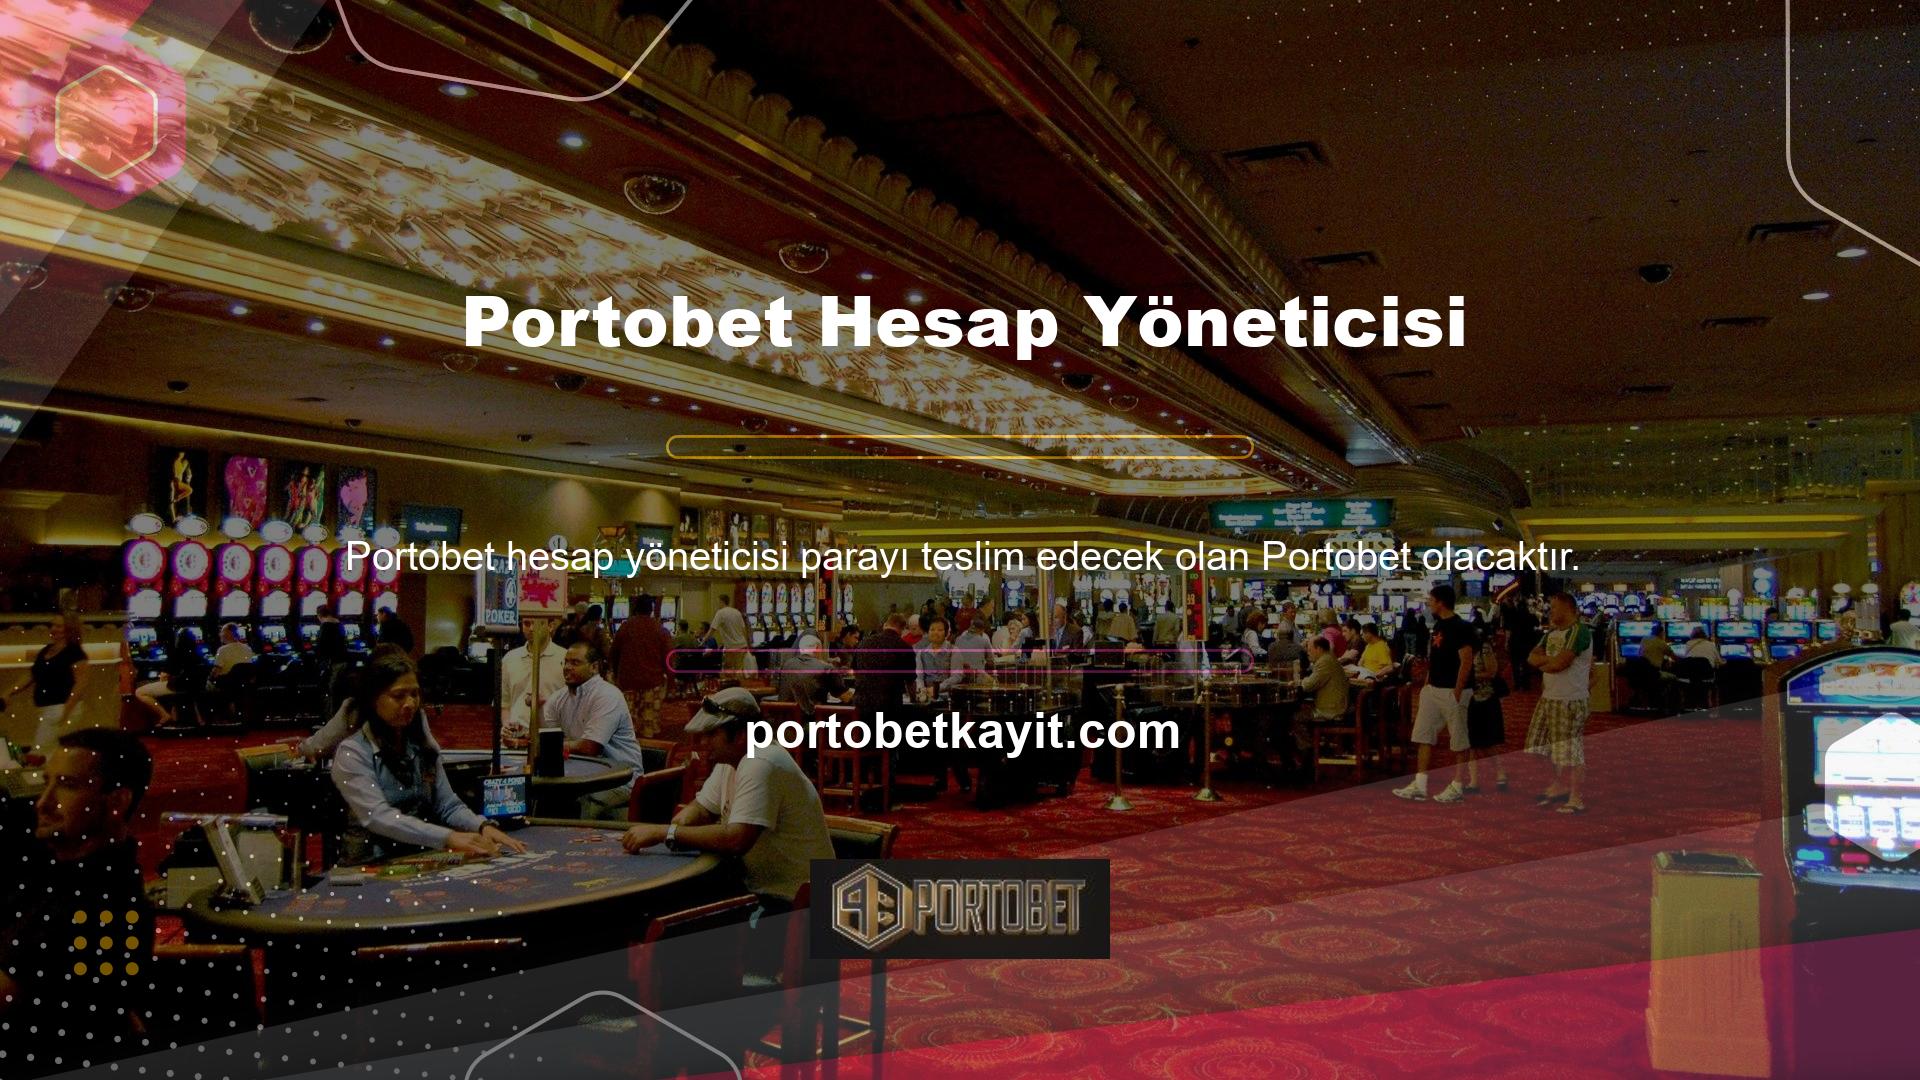 Portobet Hesap Yöneticisi Web Sitesi hakkında herhangi bir sorunuz varsa lütfen hesap yöneticinizle iletişime geçin